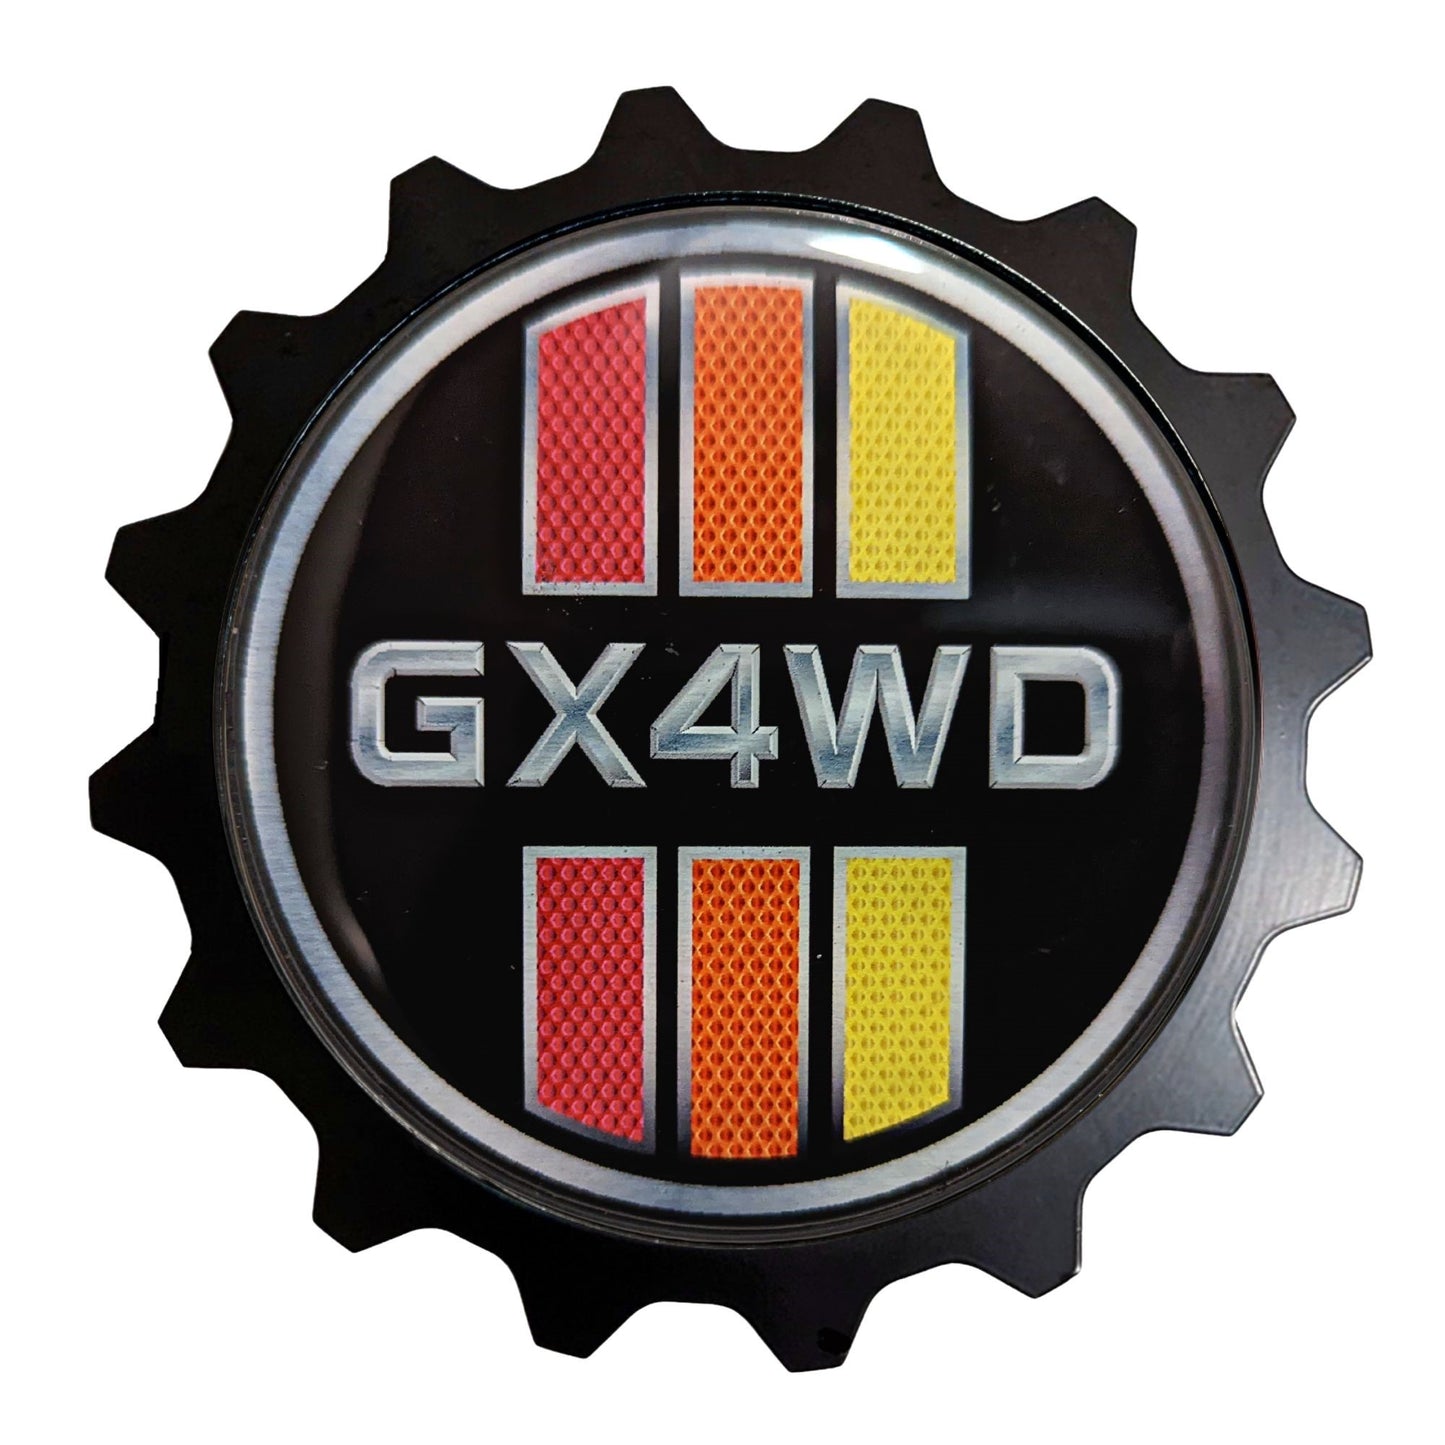 Aluminum Grille Badge Emblem For Lexus GX Prado Retro Style Tri-Color